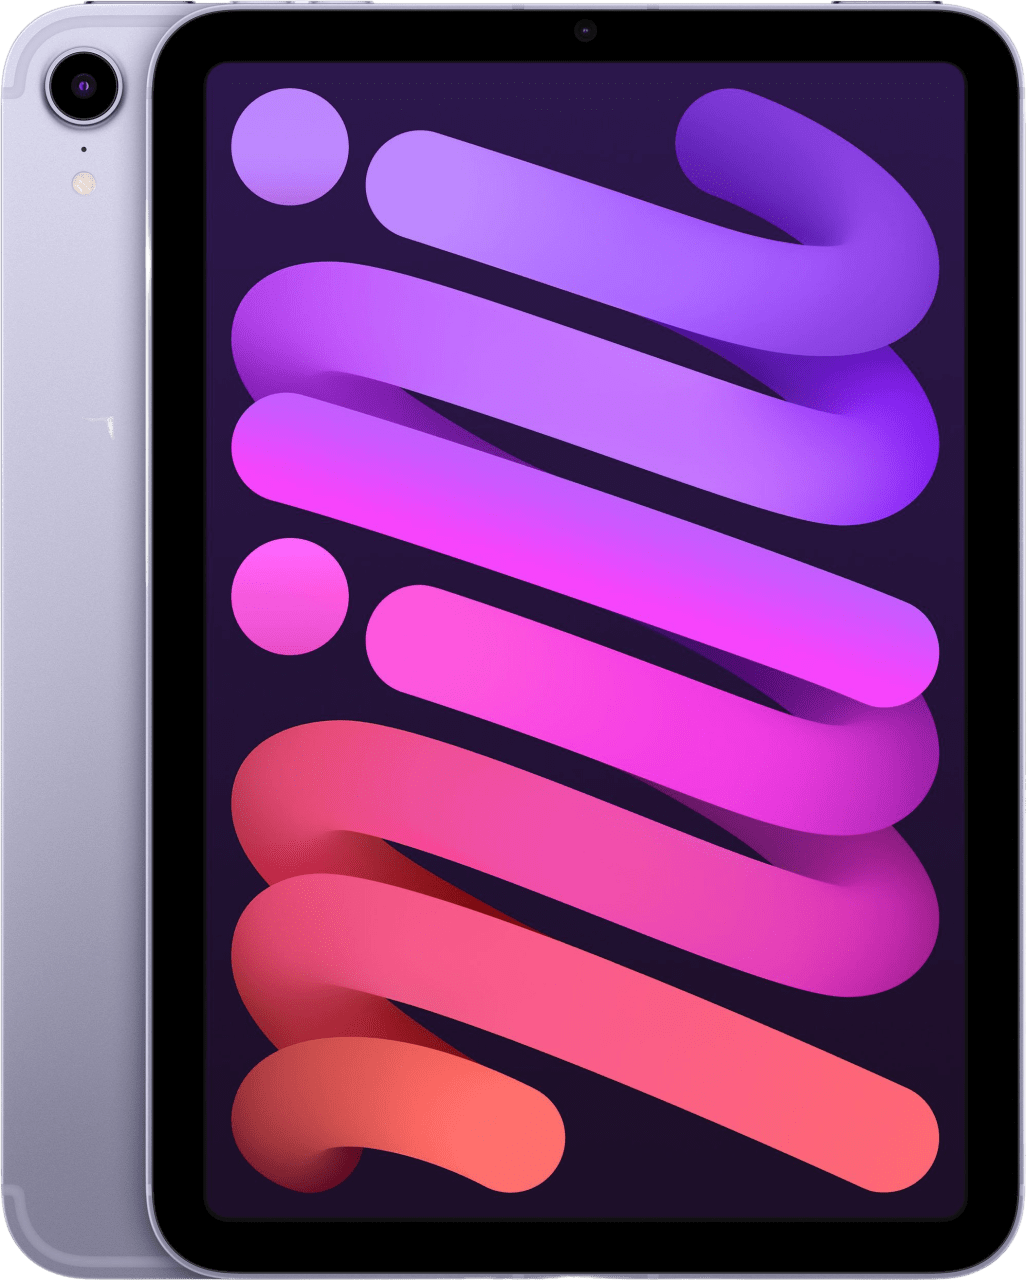 Purple Apple iPad mini (2021) - 5G - iOS 15 - 64GB.1